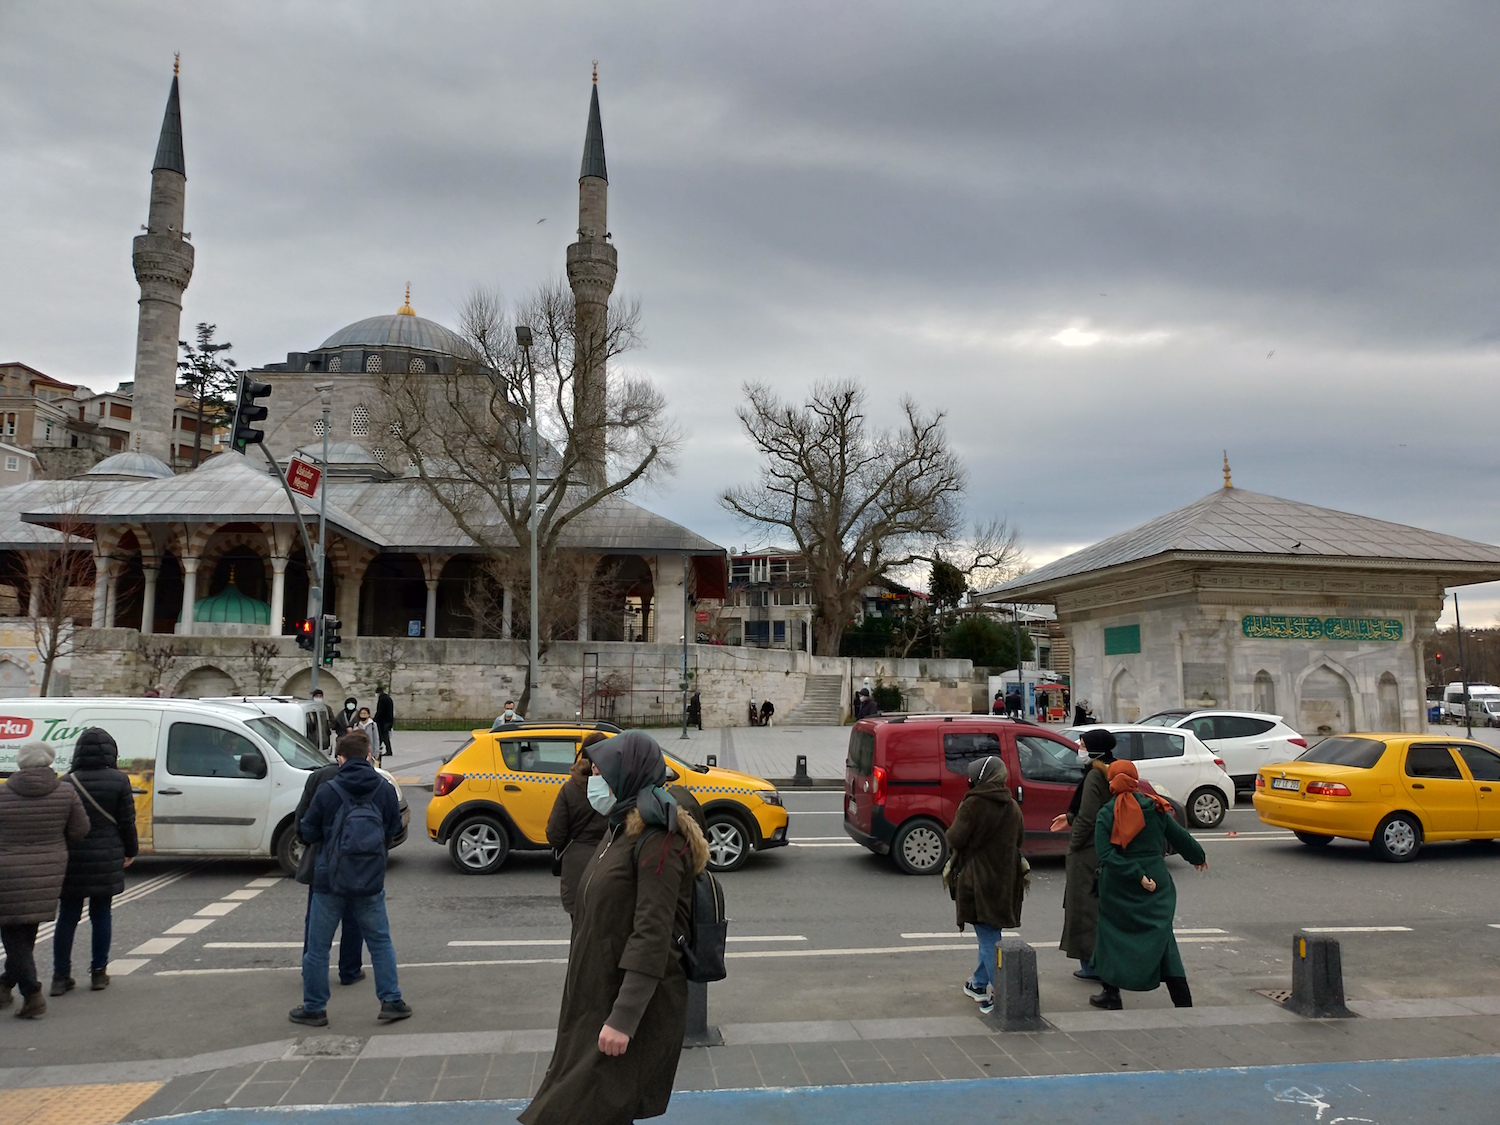 Üsküdar est un arrondissement populeux et plutôt conservateur de la rive orientale d’Istanbul. Ici, la mosque Mihrima Sultan. © Globe Reporters